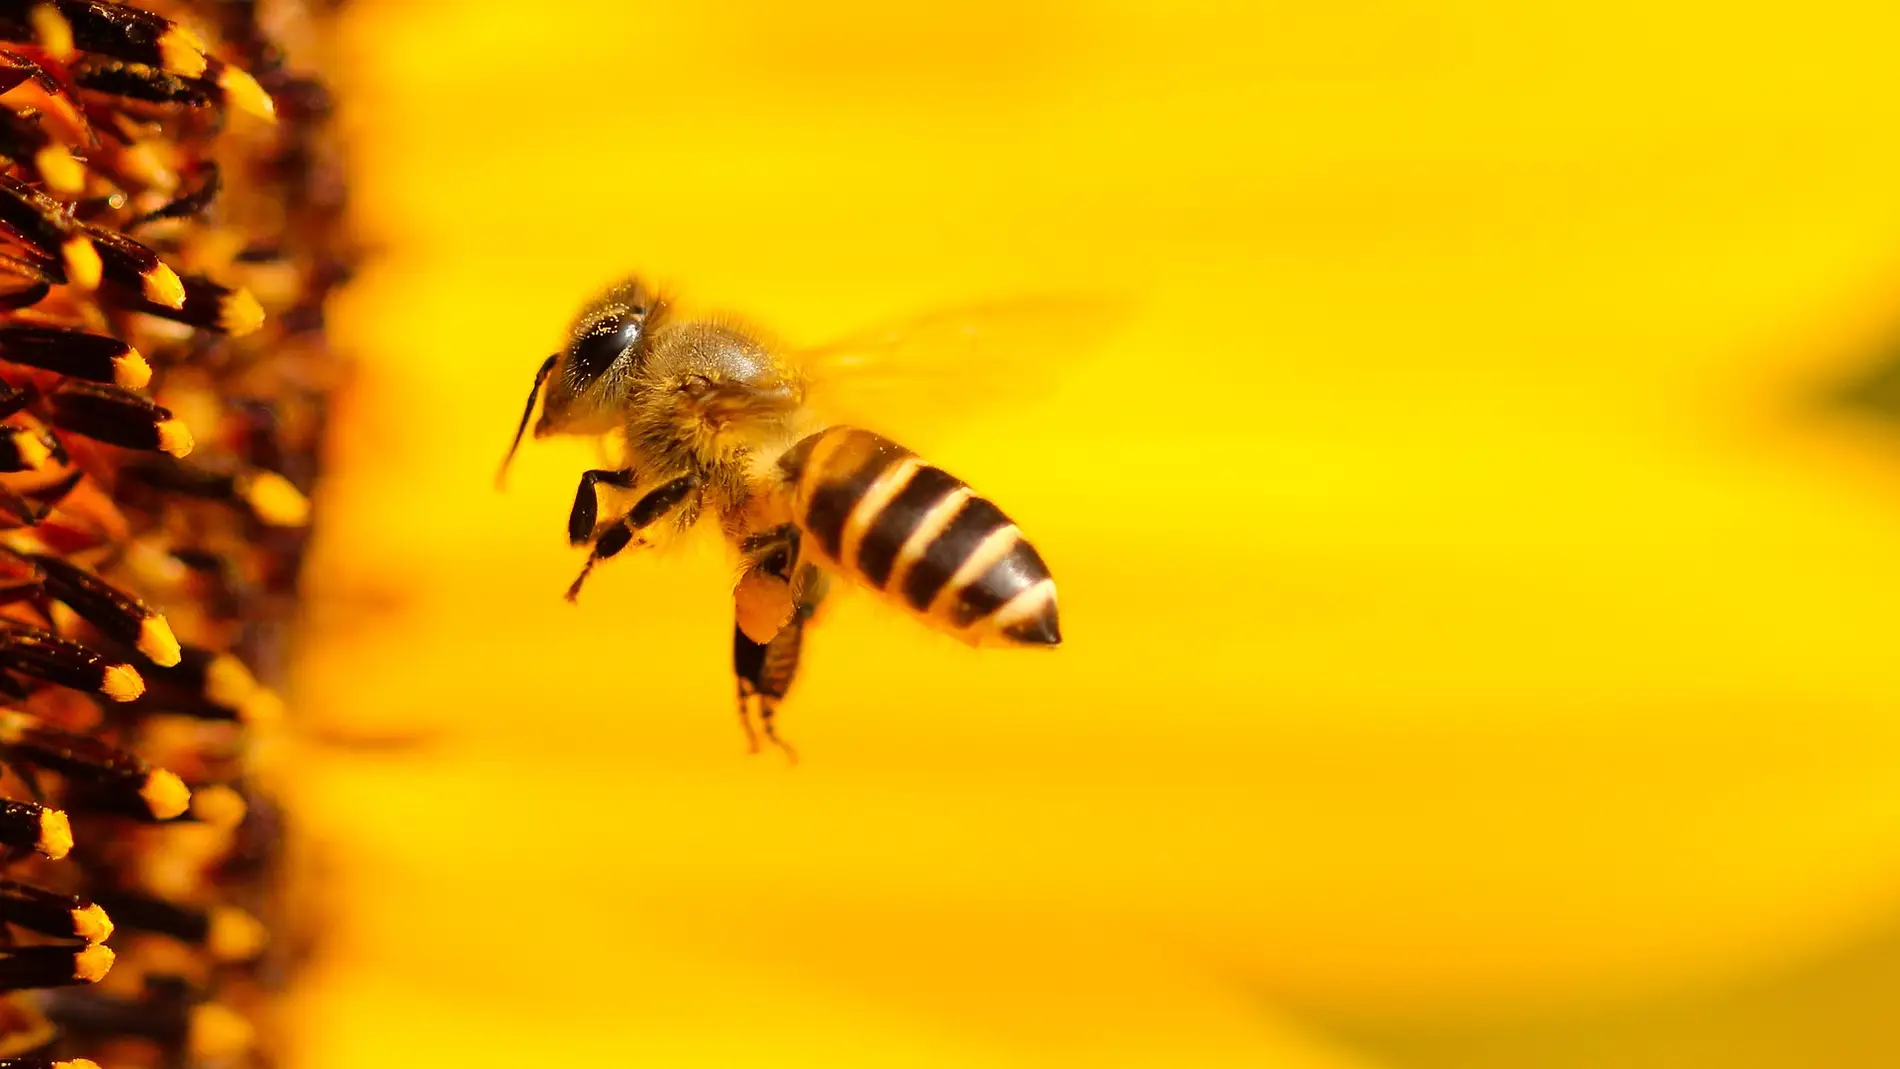 Ayudando a las abejas: el gran gesto de este santuario que ha emocionado a las redes